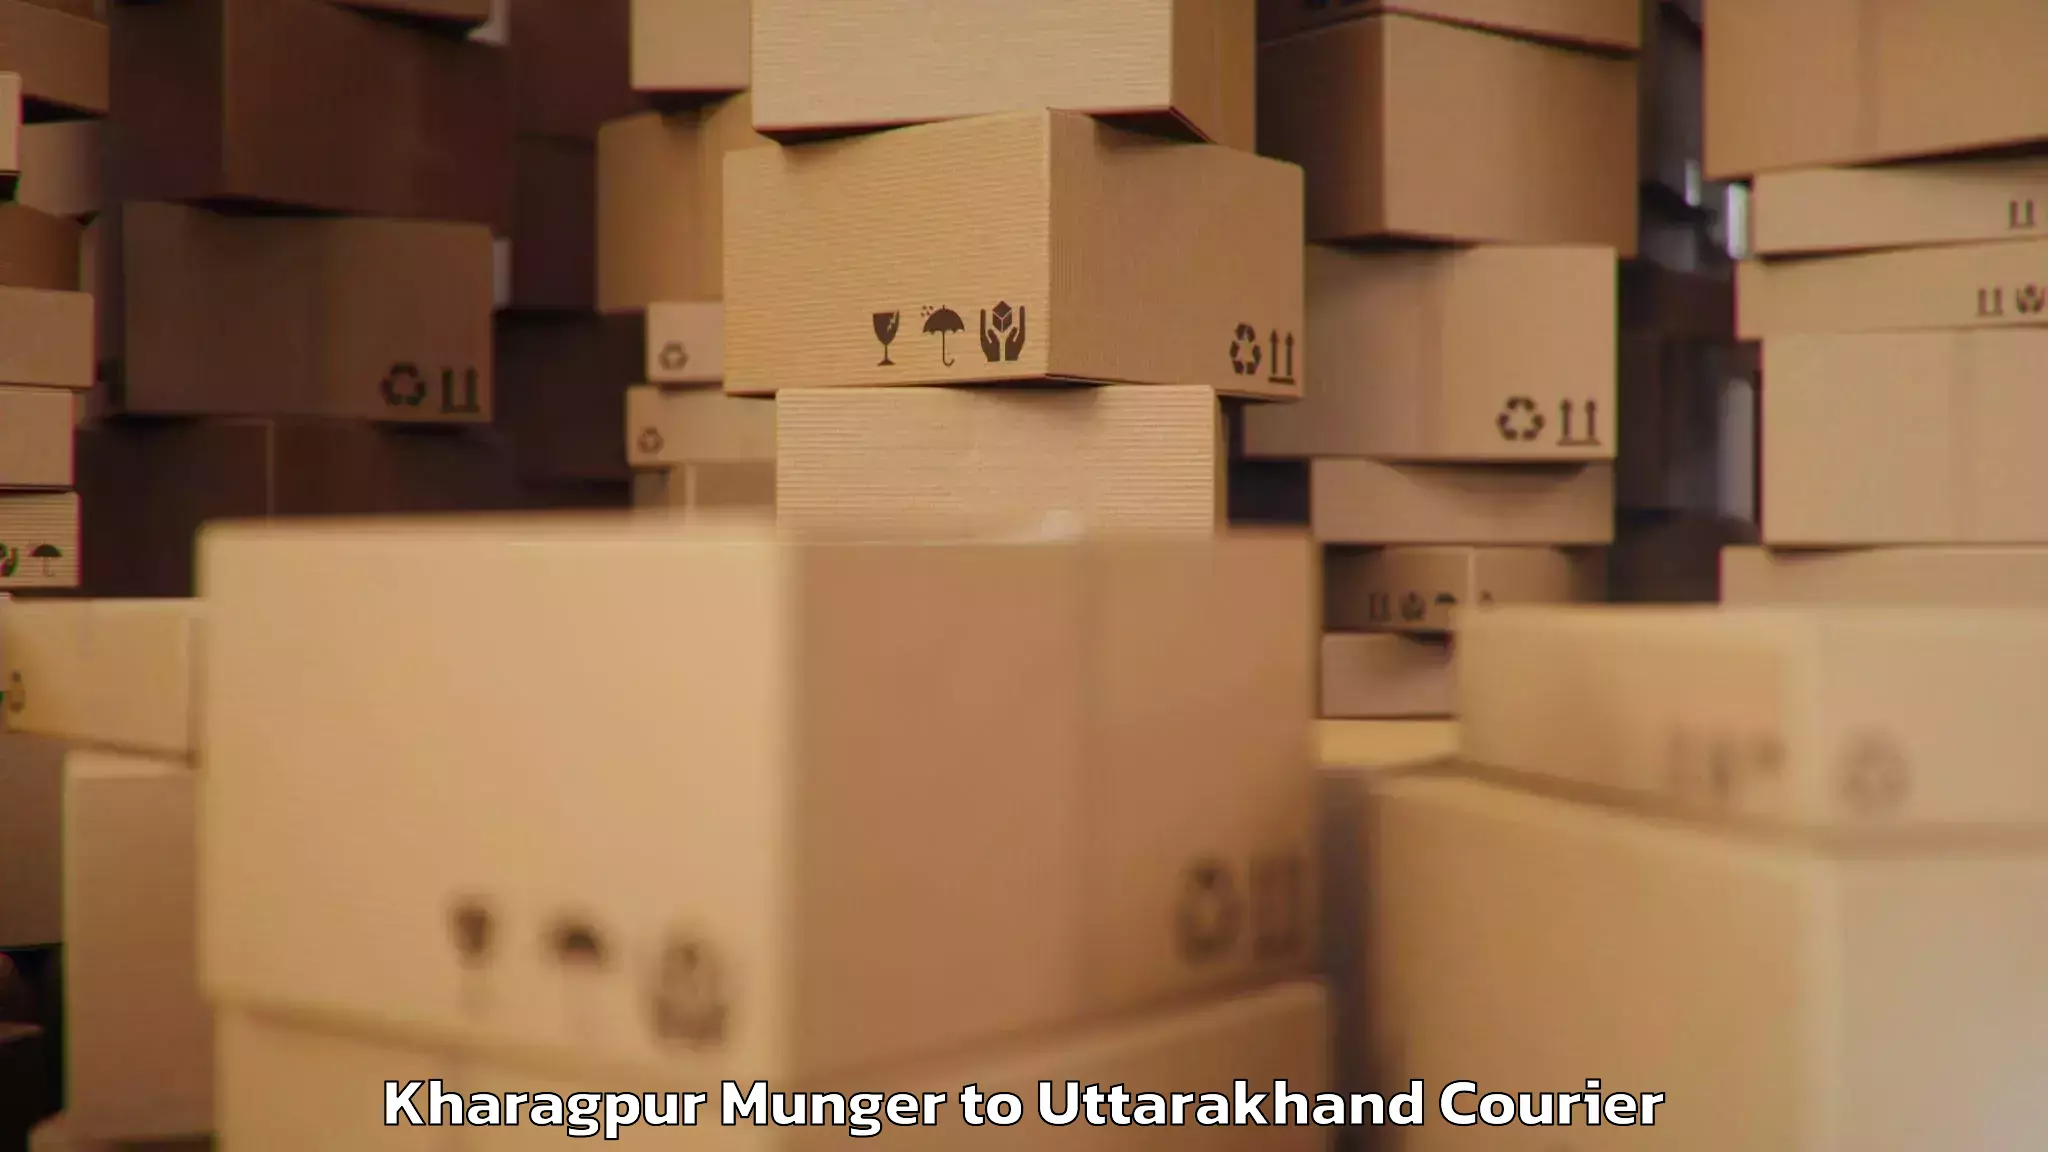 Luggage transport service Kharagpur Munger to Khatima